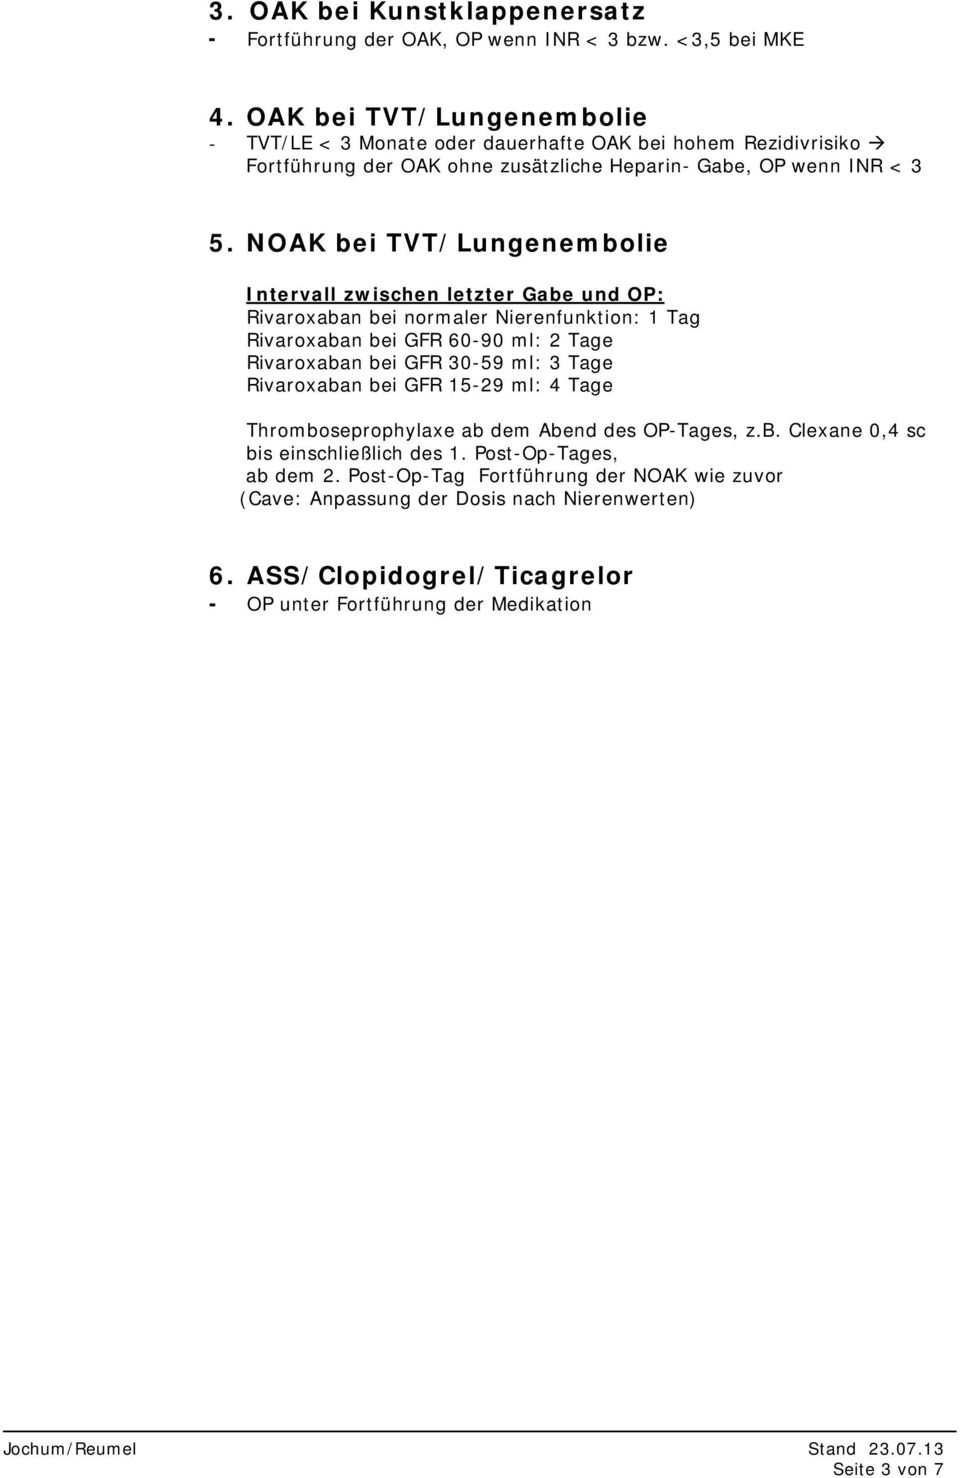 NOAK bei TVT/Lungenembolie Thromboseprophylaxe ab dem Abend des OP-Tages, z.b. Clexane 0,4 sc bis einschließlich des 1.